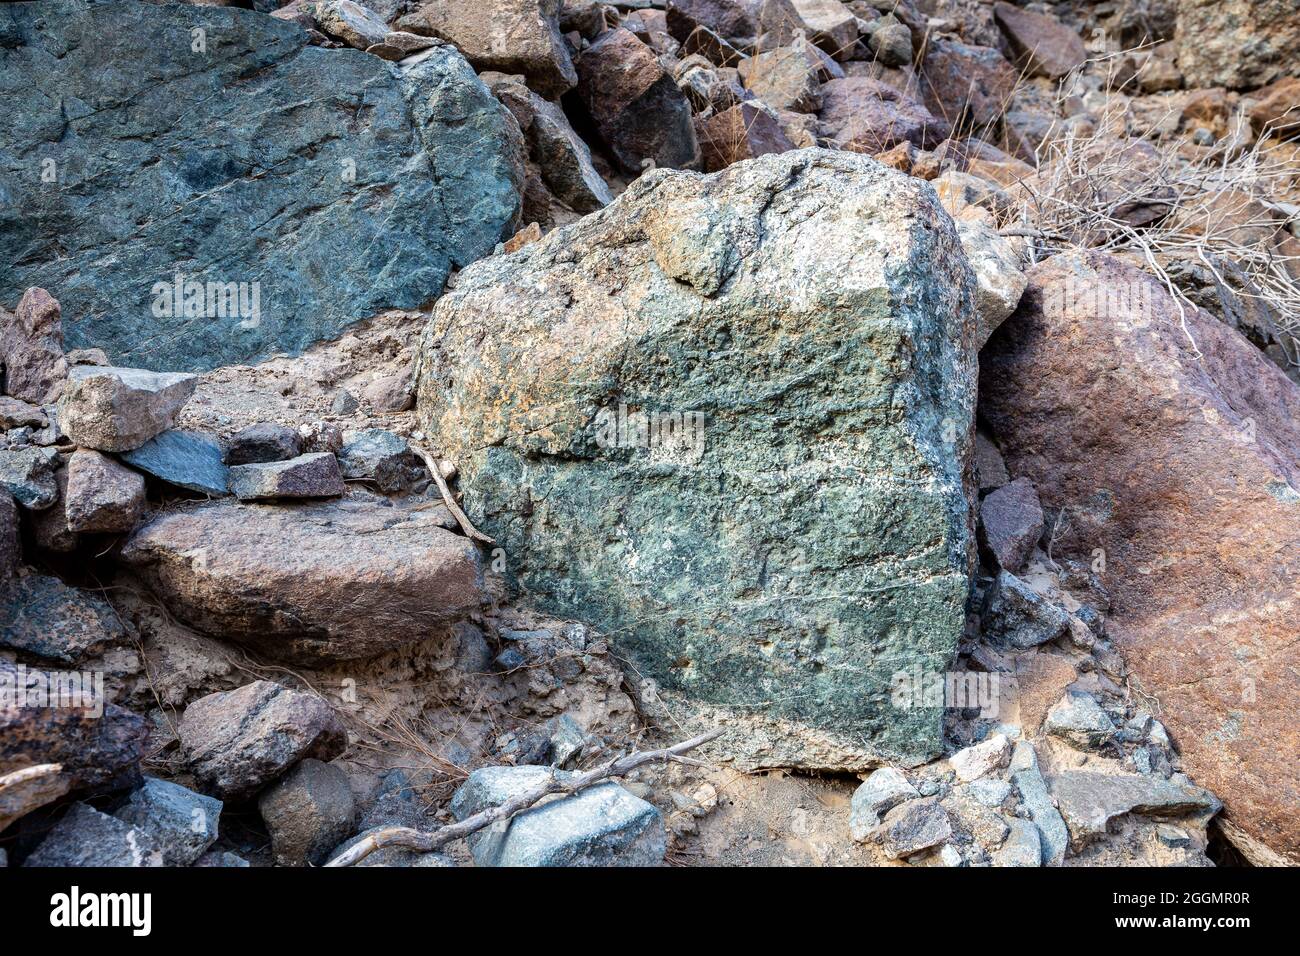 Mineral crudo de cobre, piedras verdes y rocas que contienen cobre en la antigua zona minera, Hajar Mountains, Emiratos Árabes Unidos. Foto de stock